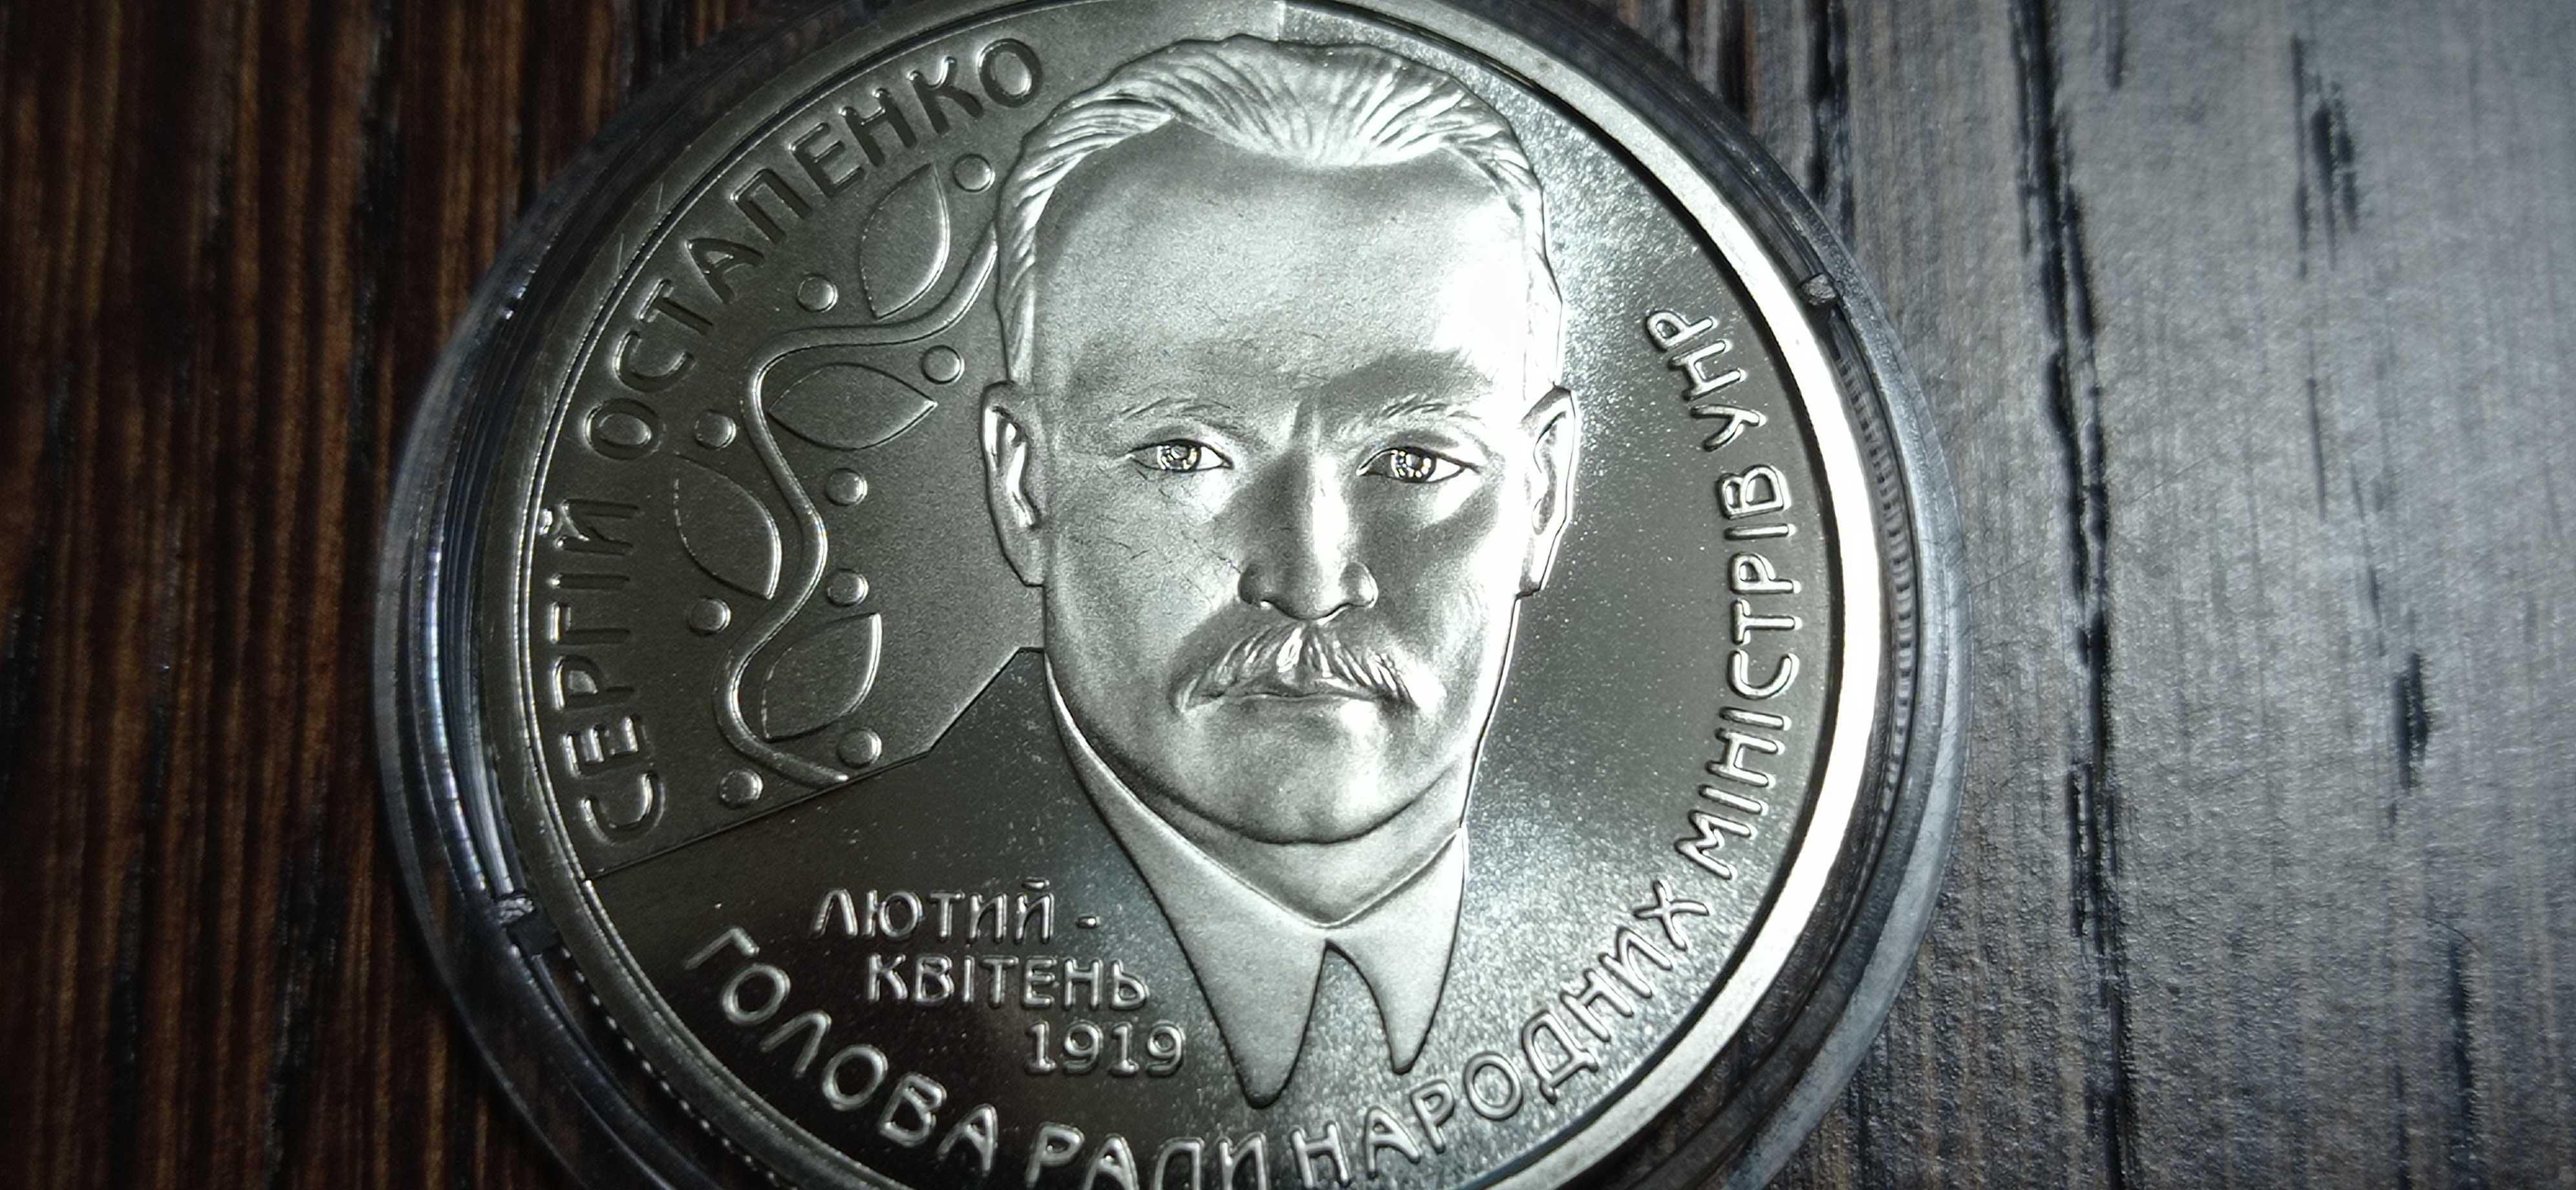 Памятная монета две гривны 2006 г. *Сергей Остапенко*